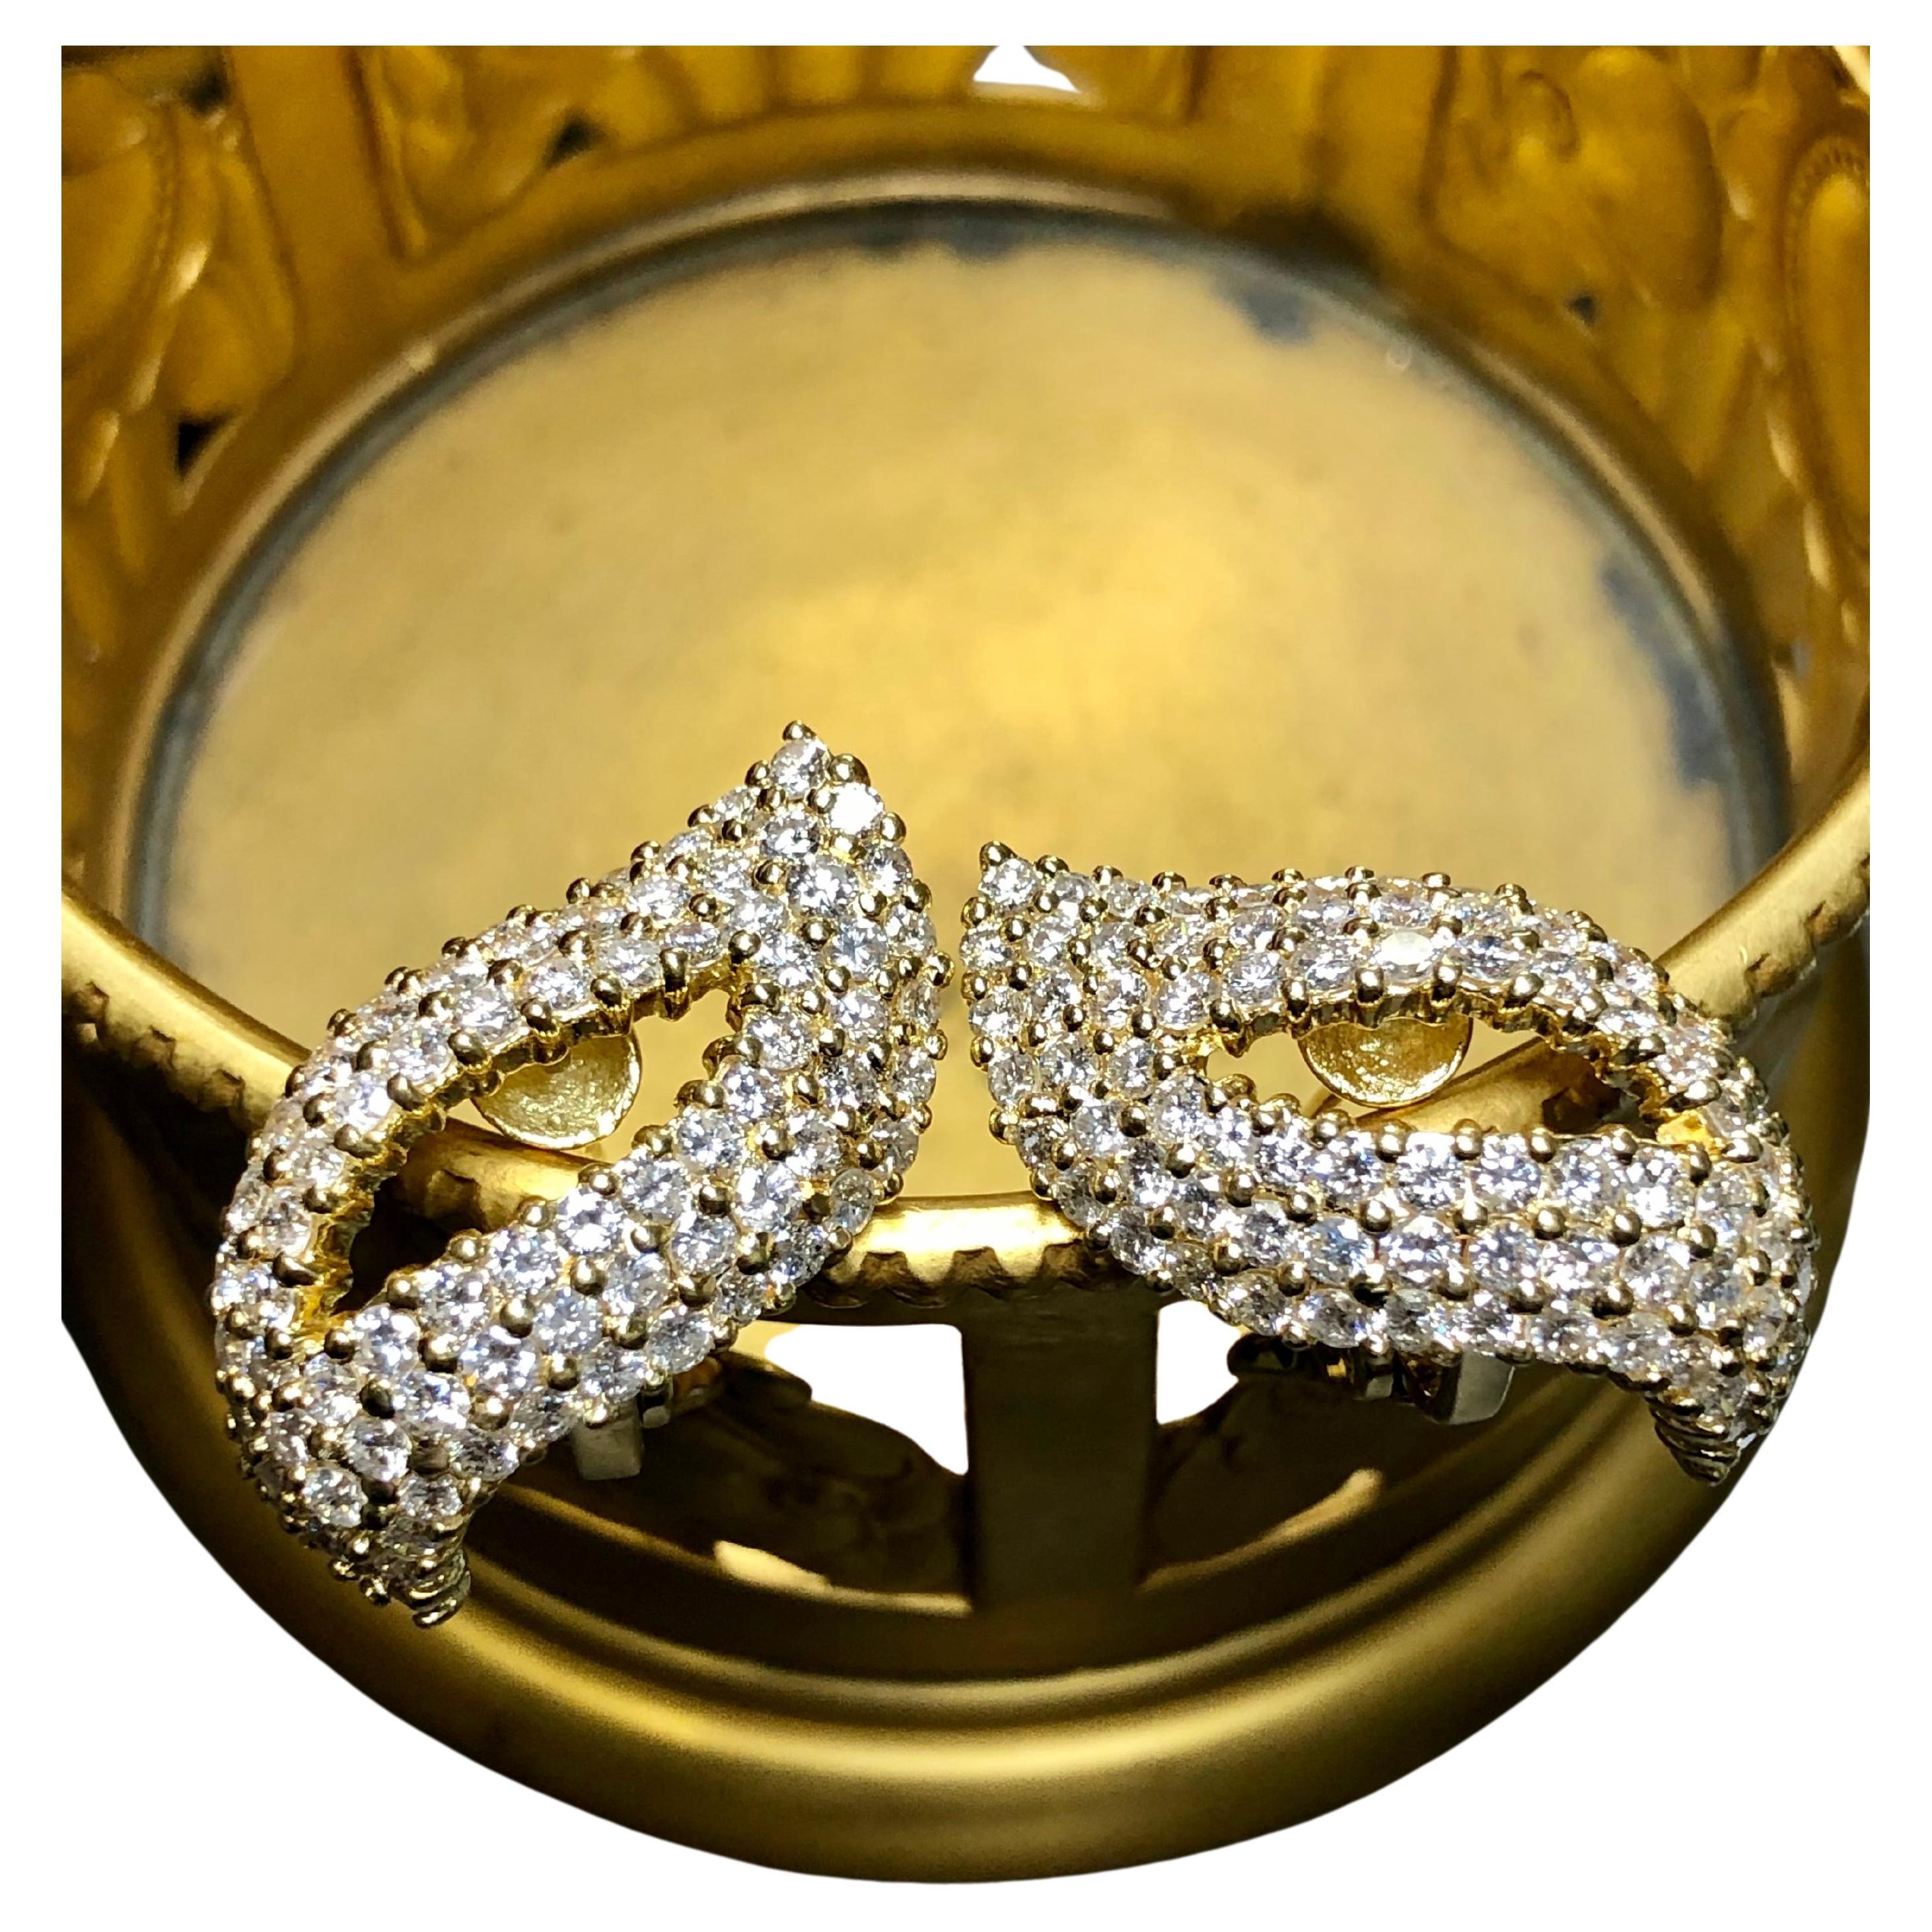 Ein elegantes Paar Ohrringe aus 18-karätigem Gelbgold, besetzt mit runden Diamanten der Farbe G-H und der Reinheit Si1-2 mit ca. 6,50cttw. Sie sind mit Omega-Rücken durchbohrt.


Abmessungen/Gewicht:

Die Ohrringe sind 1,1